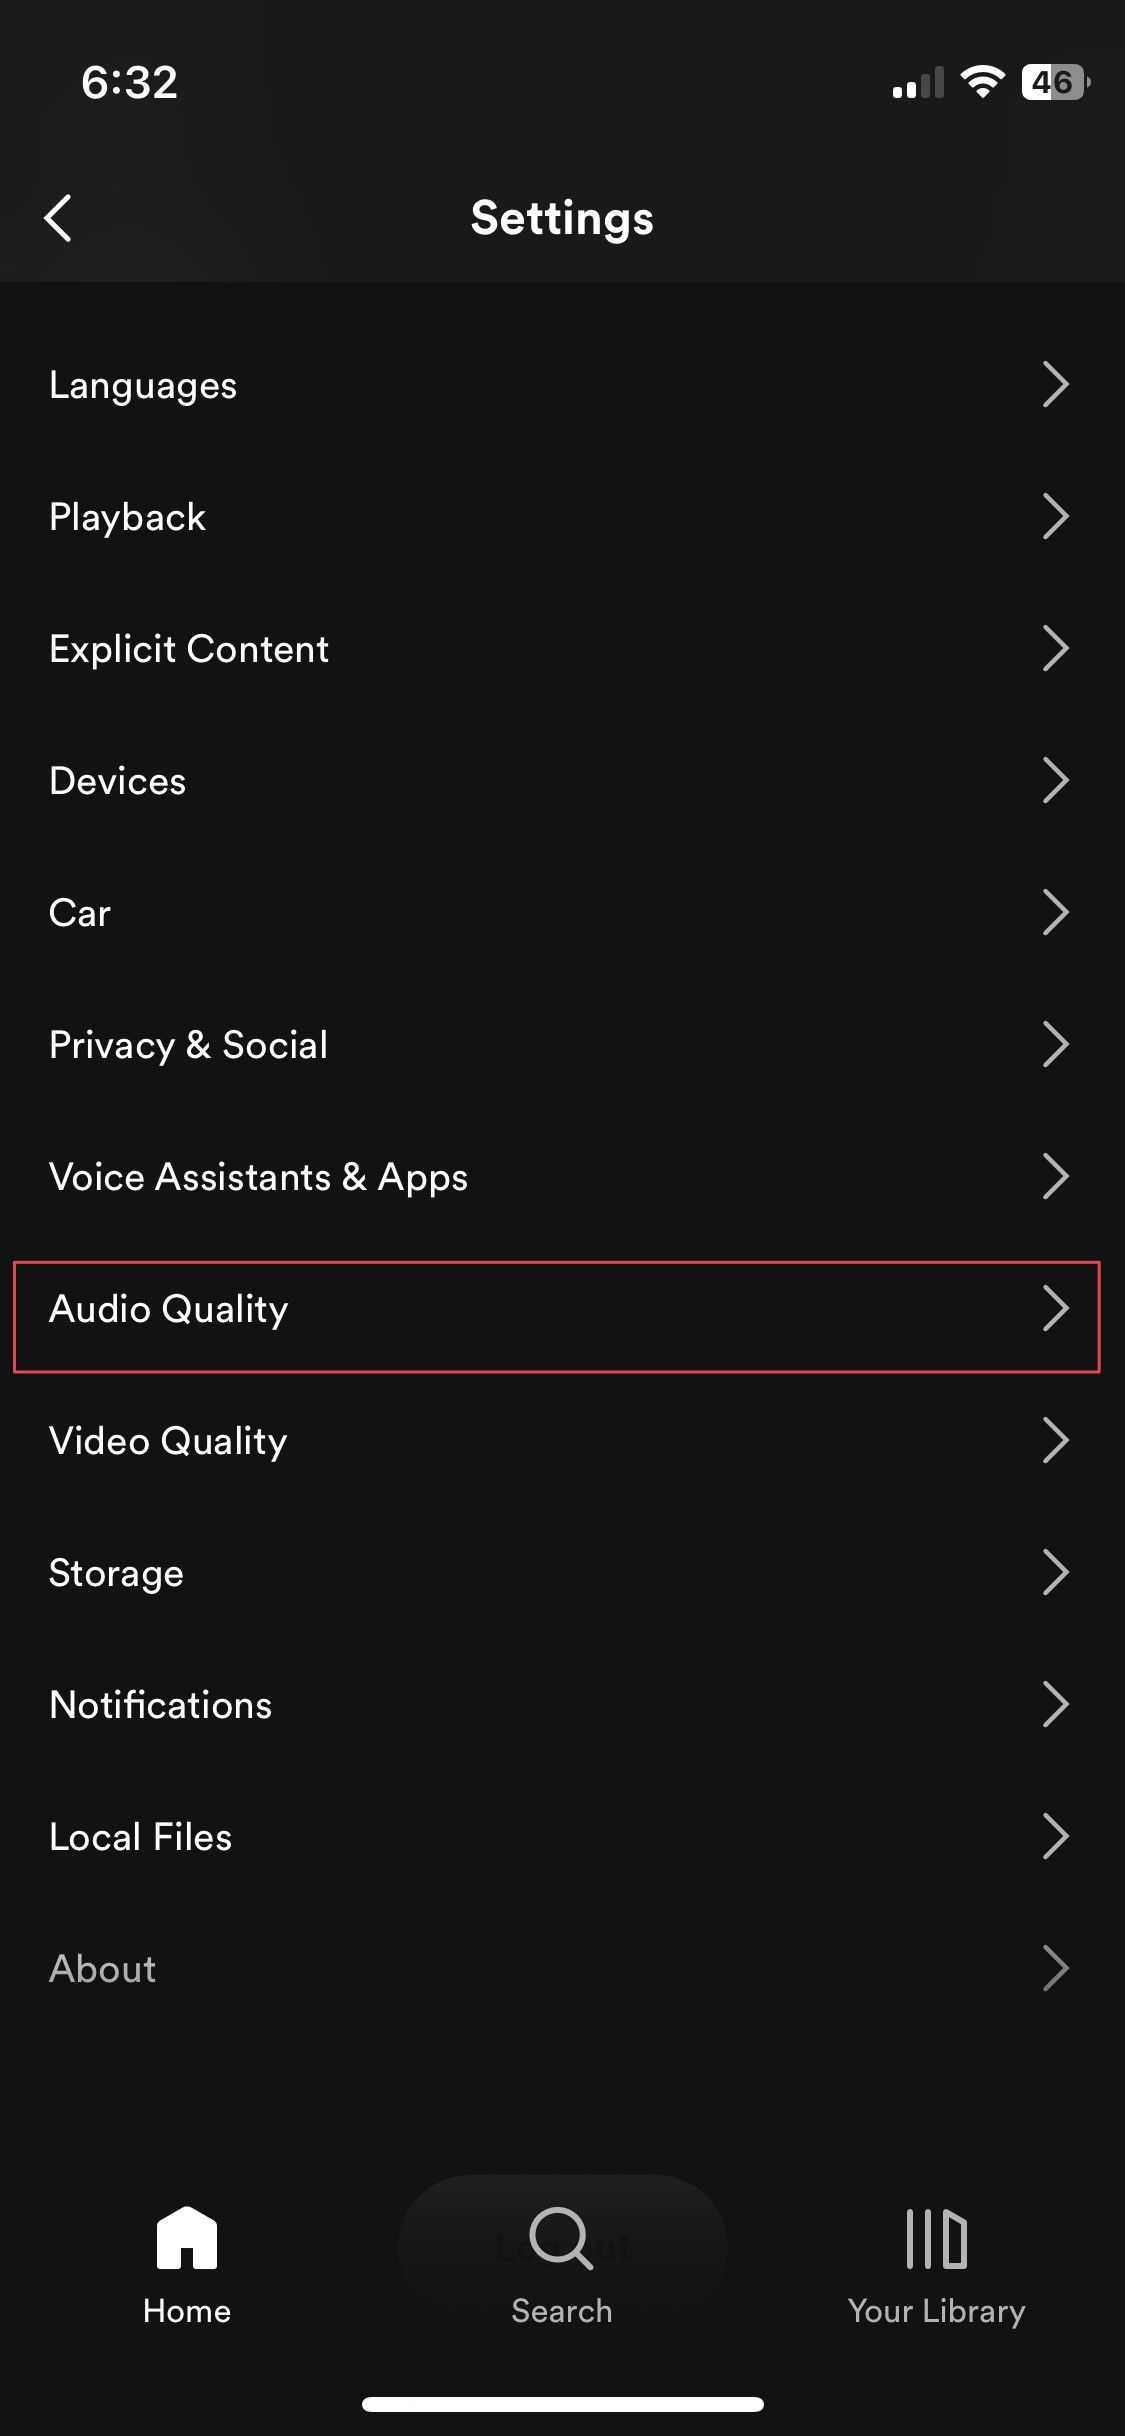 Halaman pengaturan aplikasi Spotify iPhone menampilkan opsi kualitas audio